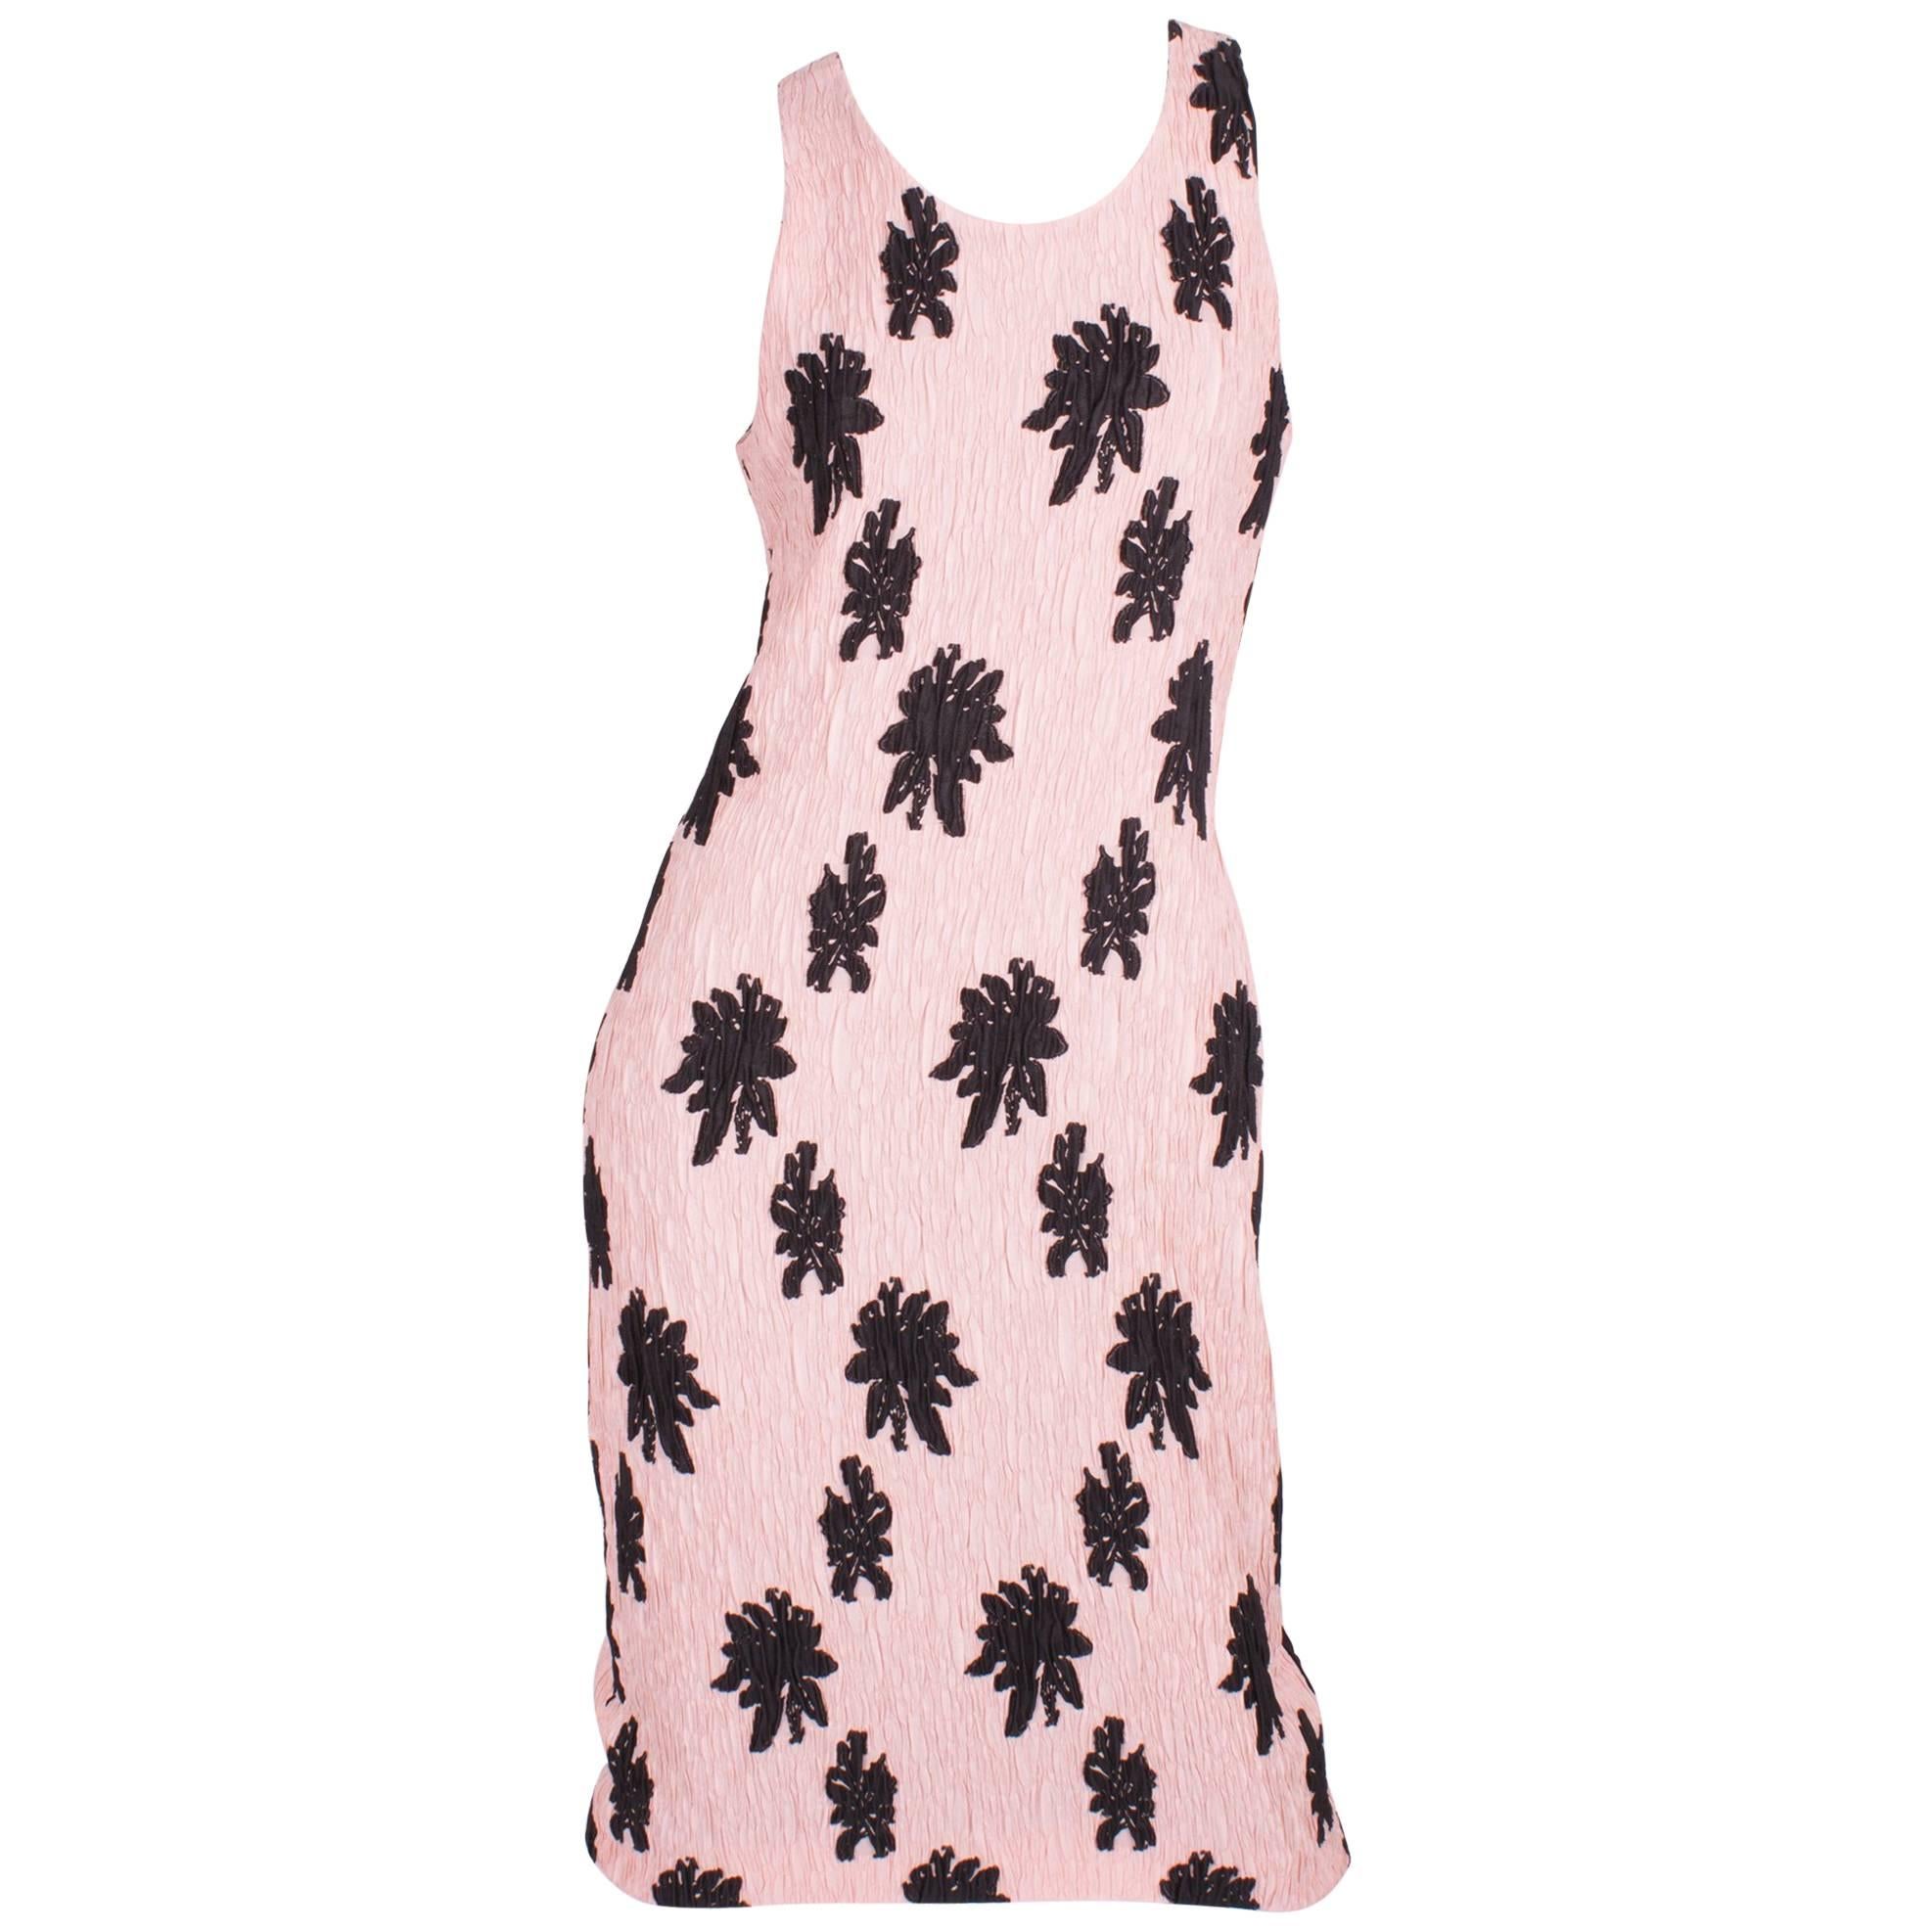 Balenciaga Paris Floral Applique Silk Blend Dress - pale pink/black For Sale